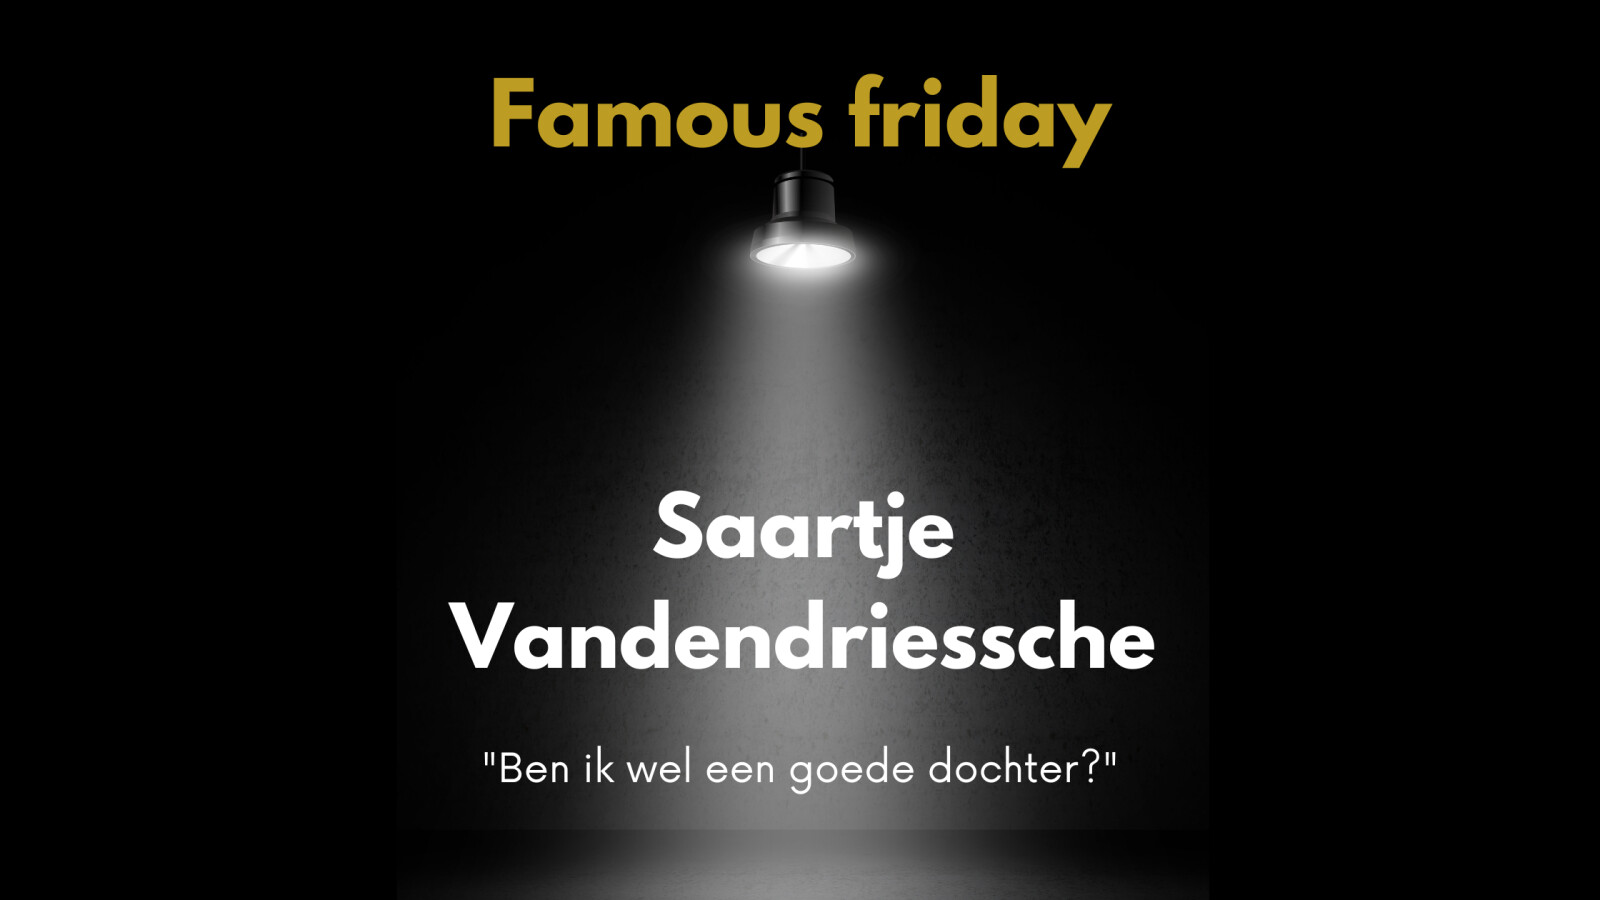 Famous Friday: Saartje Vandendriessche: "Ben ik wel een goede dochter?"